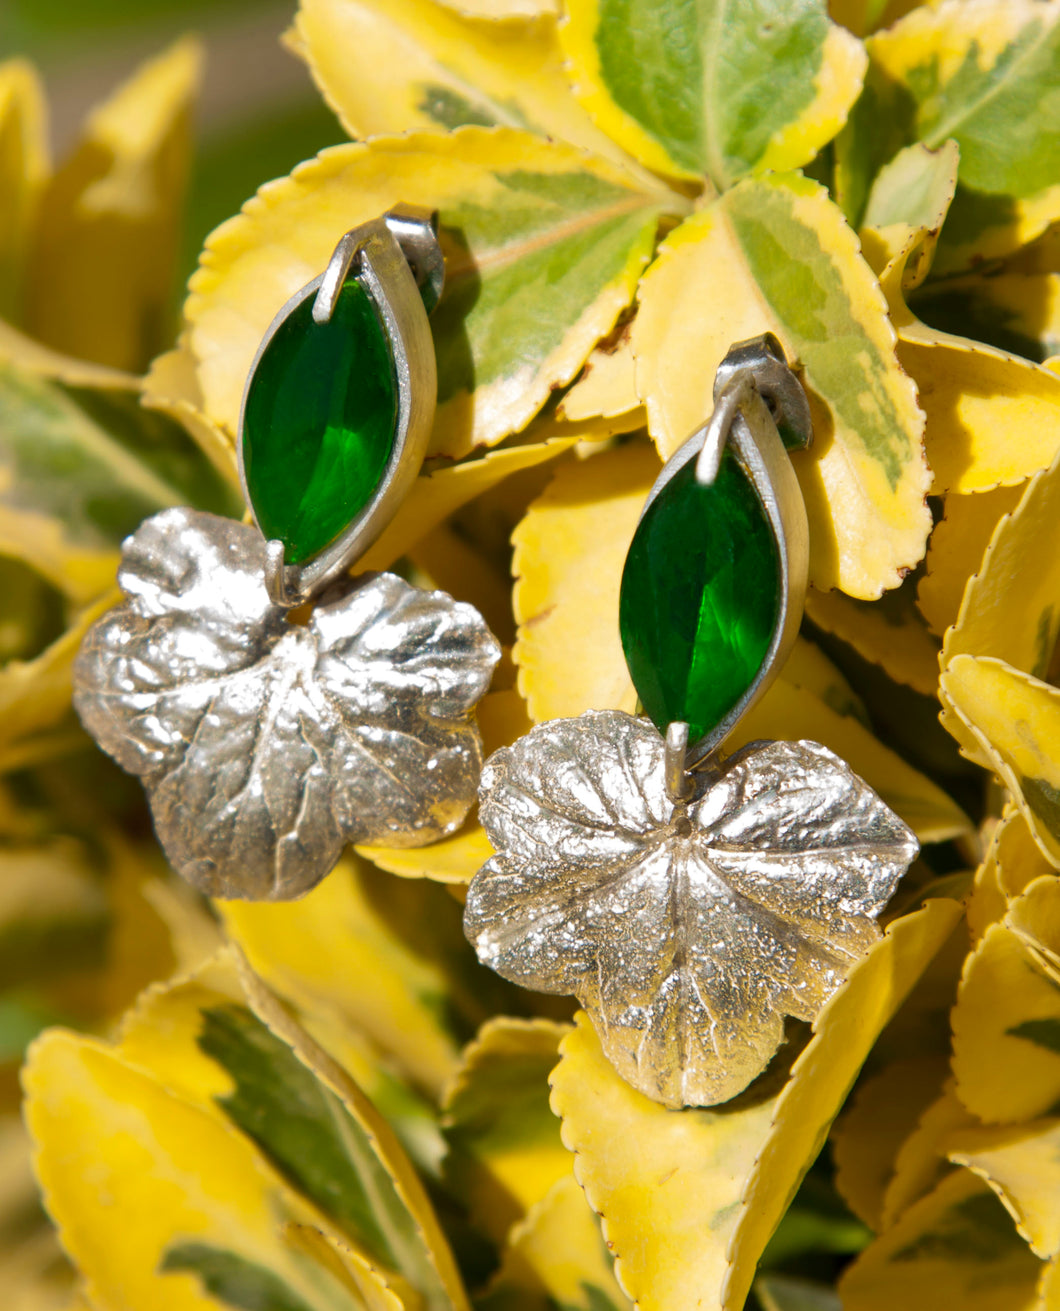 Green Marquise Leaf Earrings